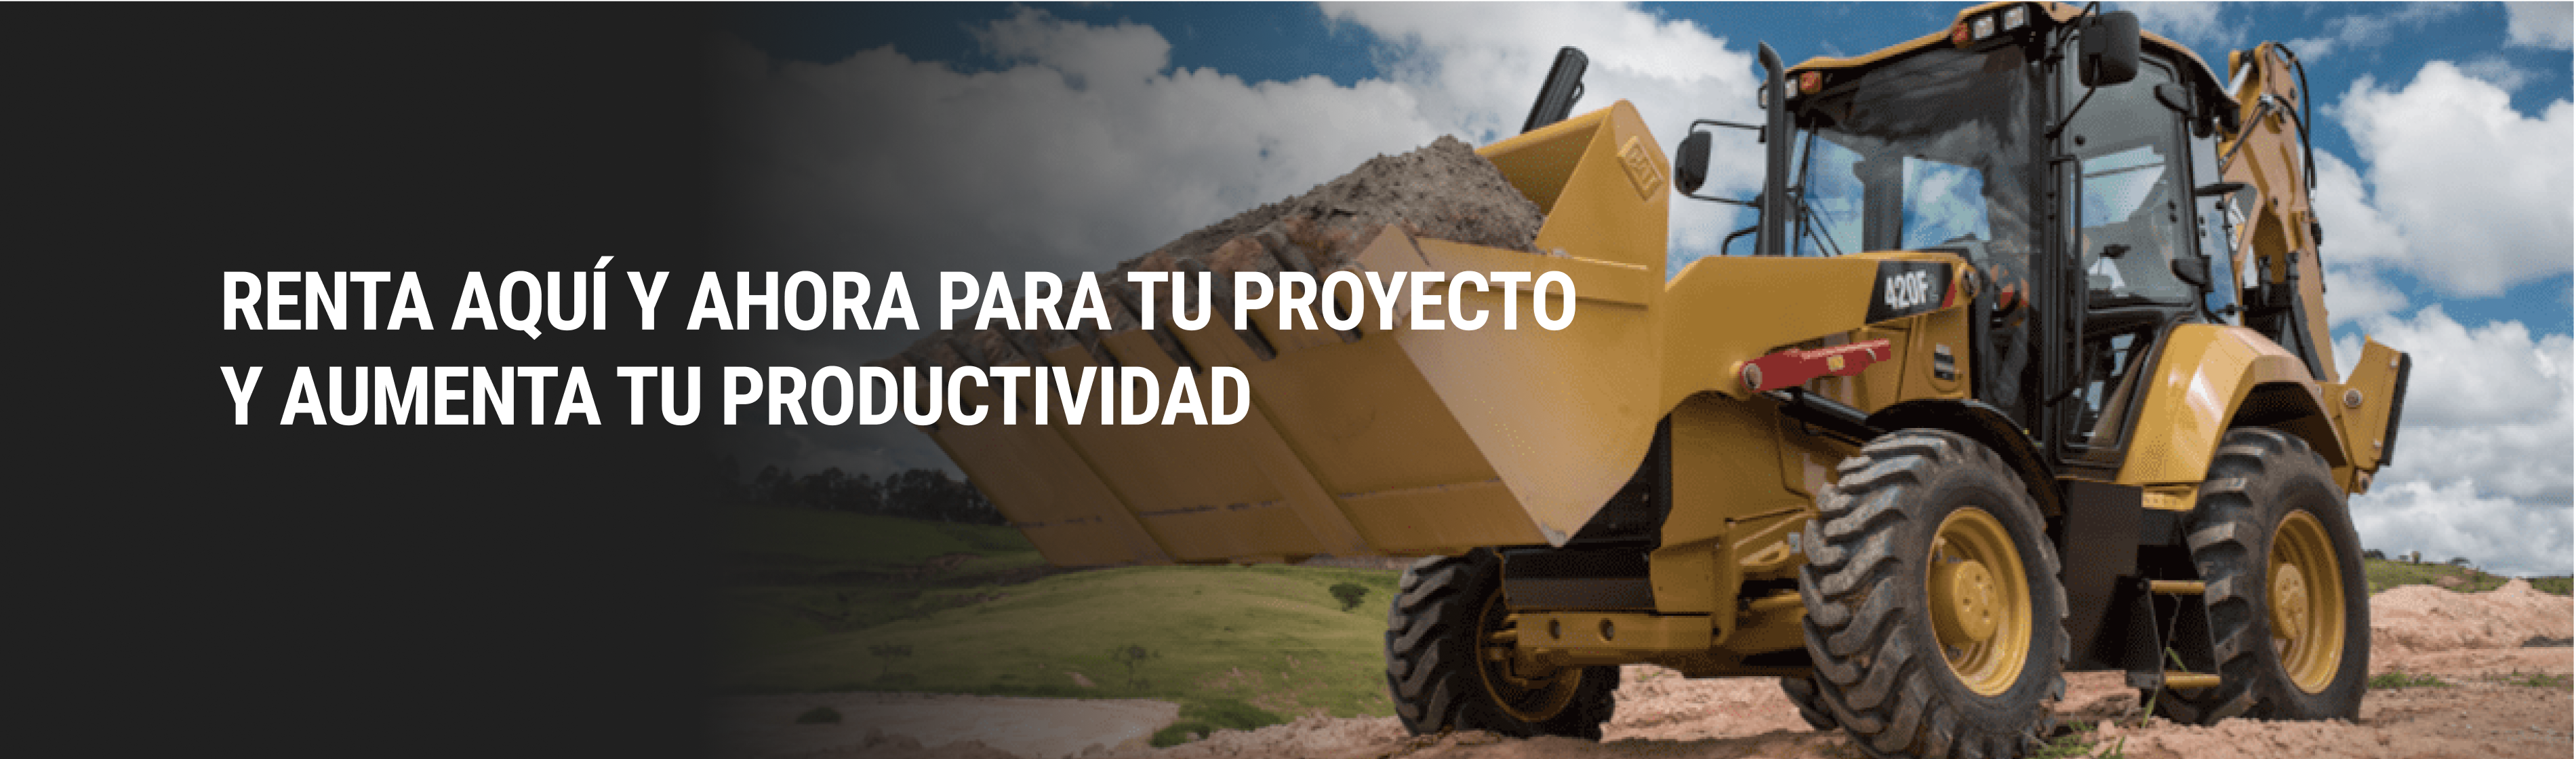 Banner sobre un tractor con texto que dice Renta
            Aqui y ahora para tu proyecto y aumenta tu productividad